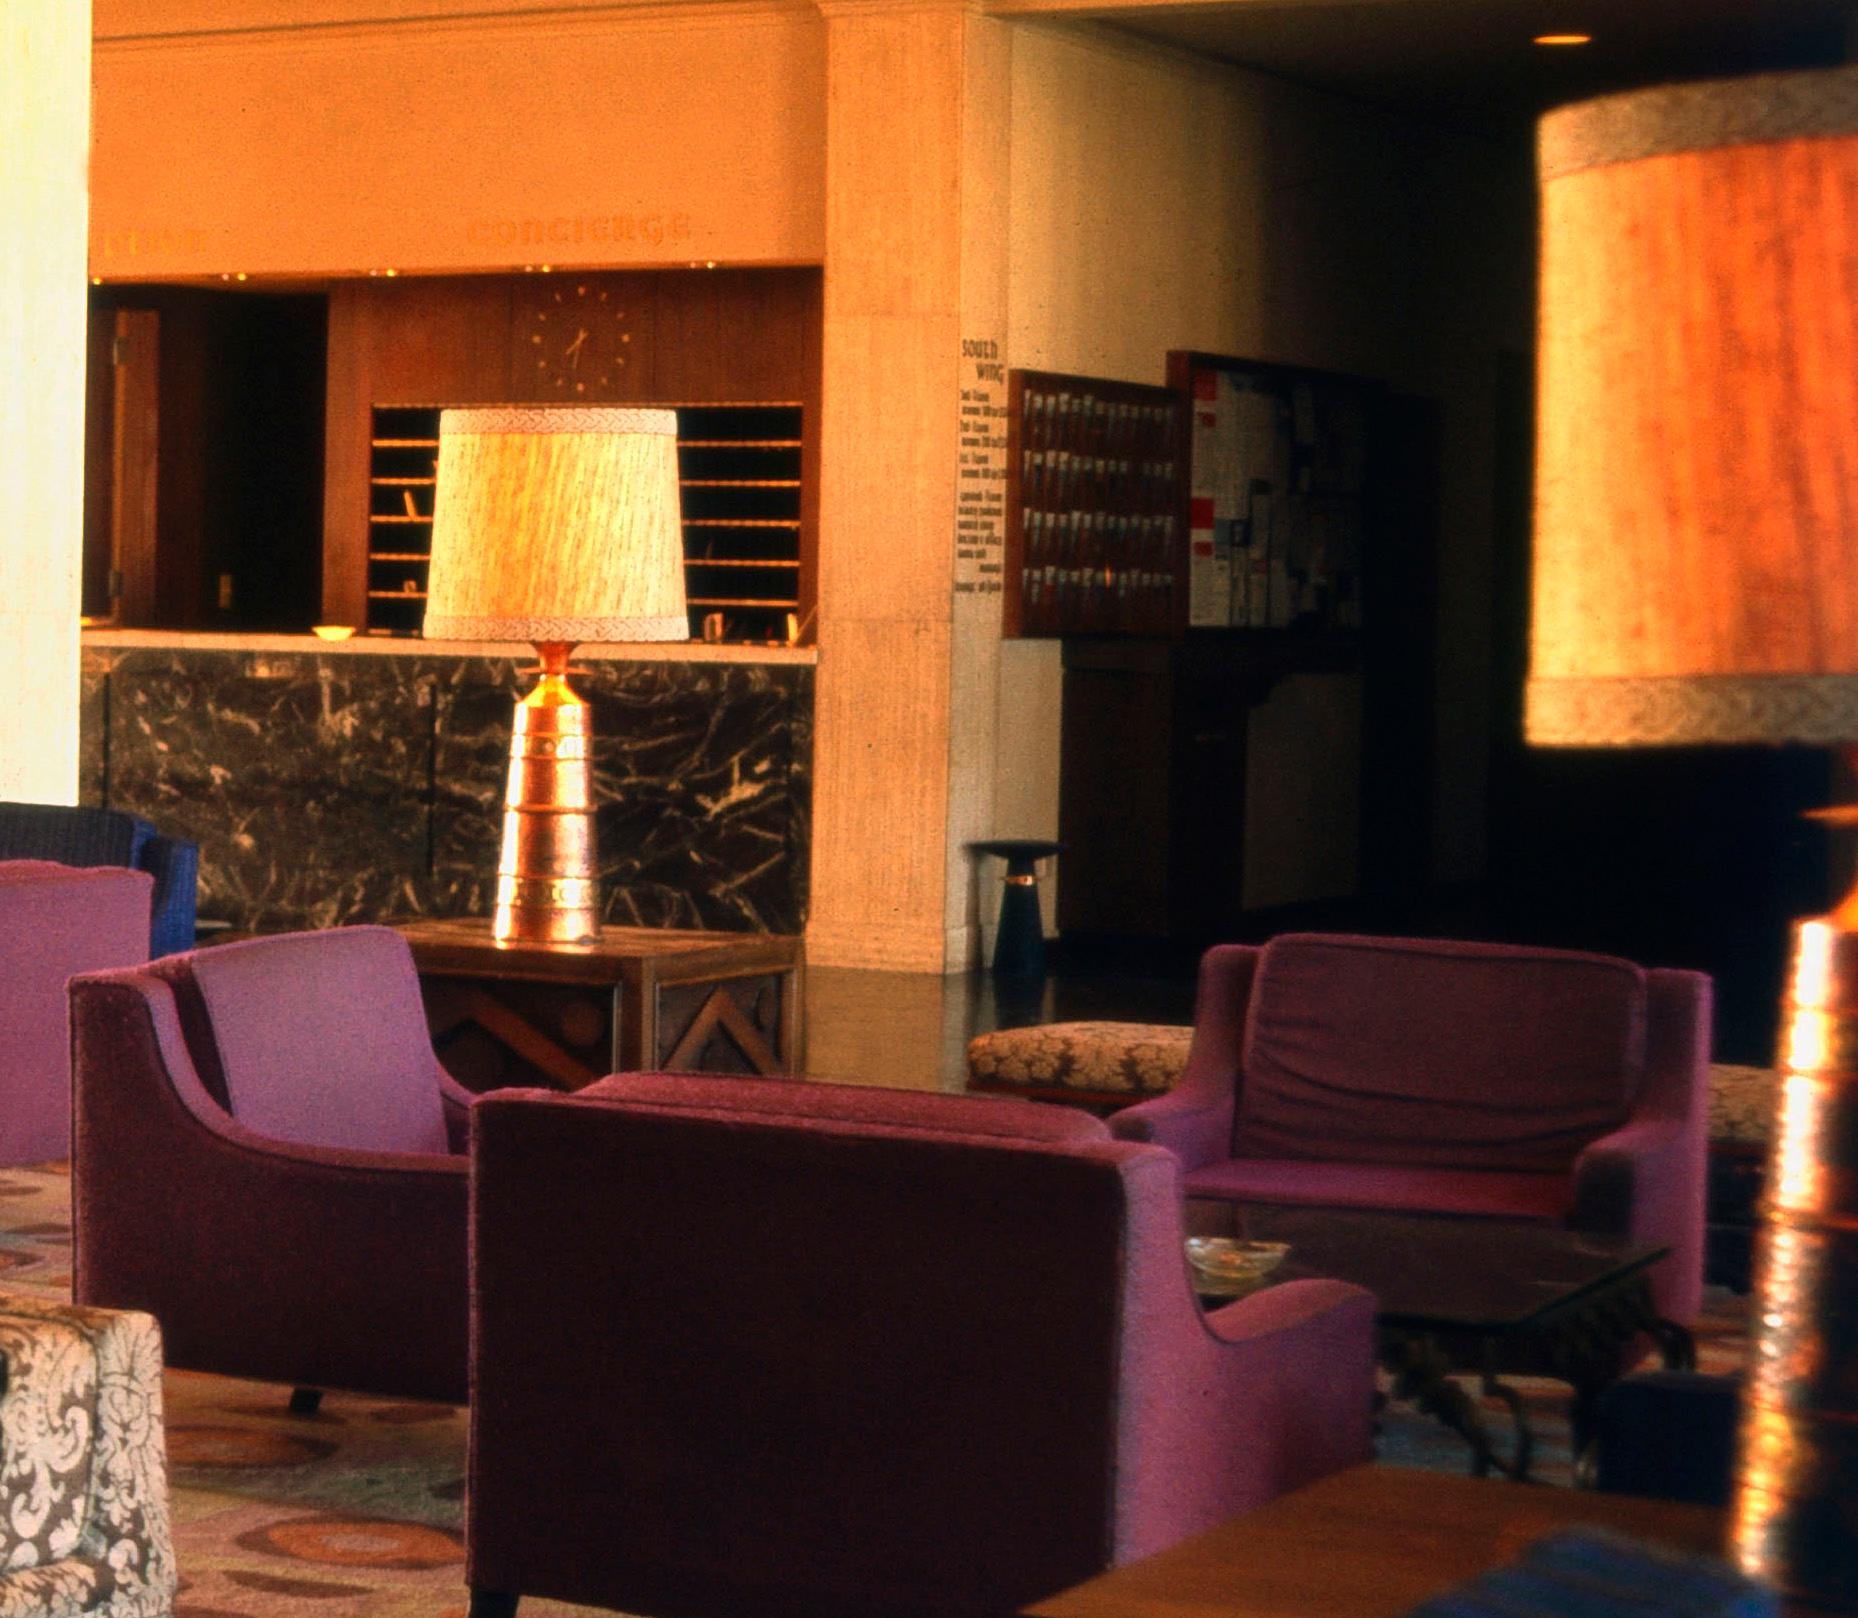 Lobby rétro de l'hôtel des années 1970, édition limitée, imprimé ultérieurement - Photograph de Walter Rudolph